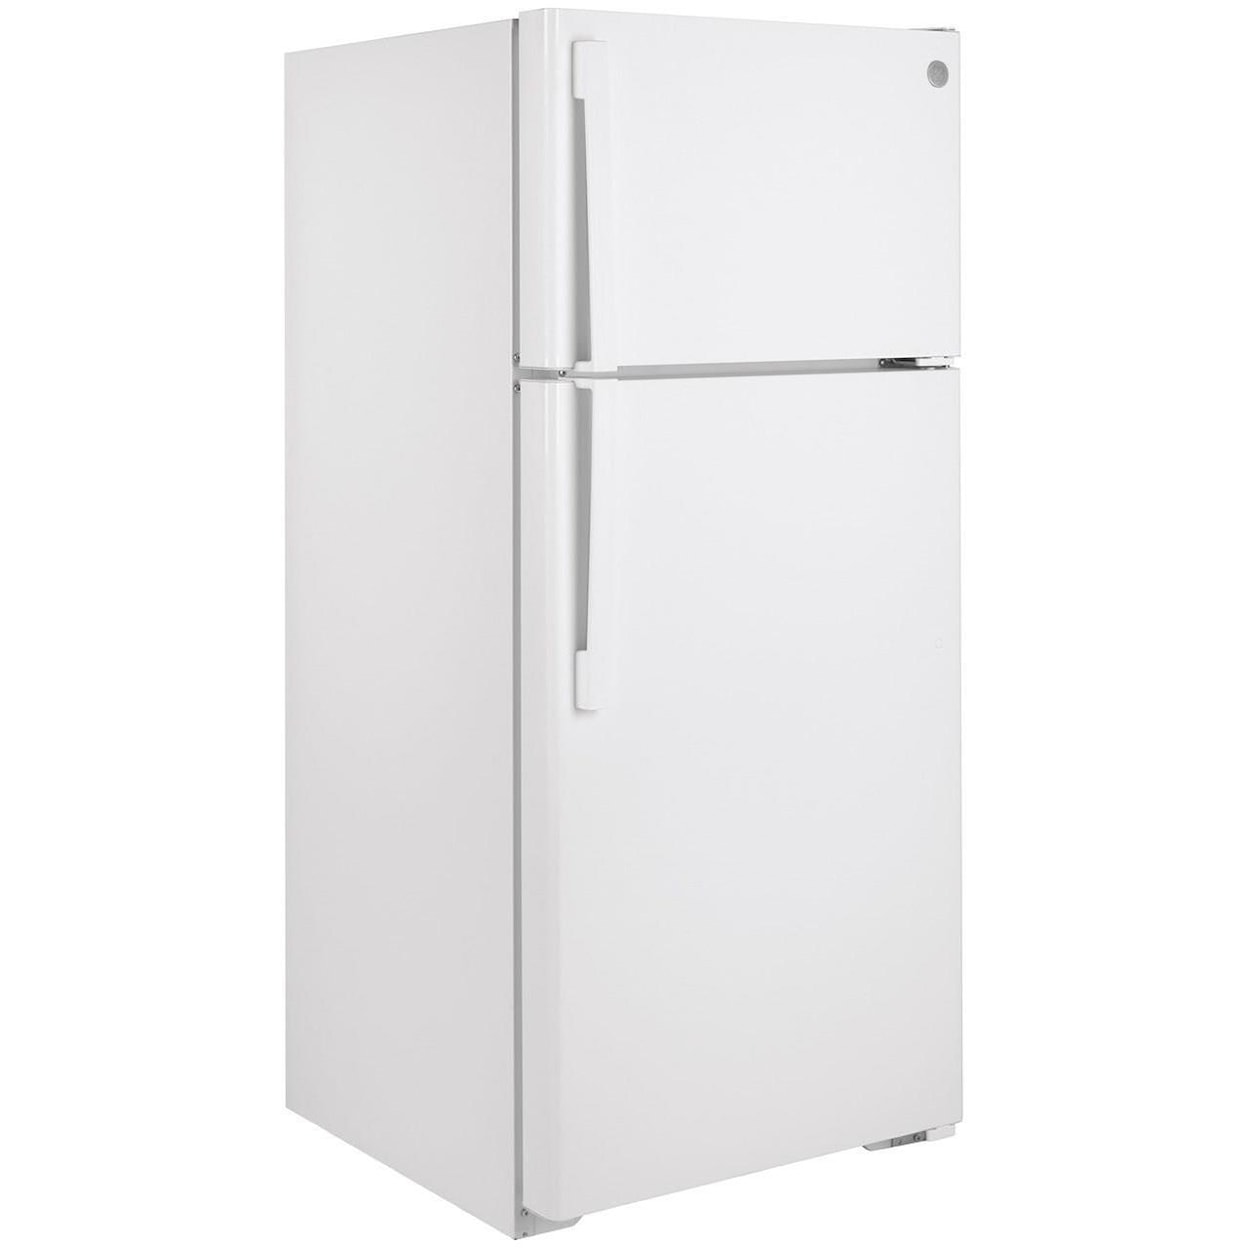 GE Appliances GE Top-Freezer Refrigerators GE® ENERGY STAR® 16.6 Cu. Ft. Top-Freezer Re